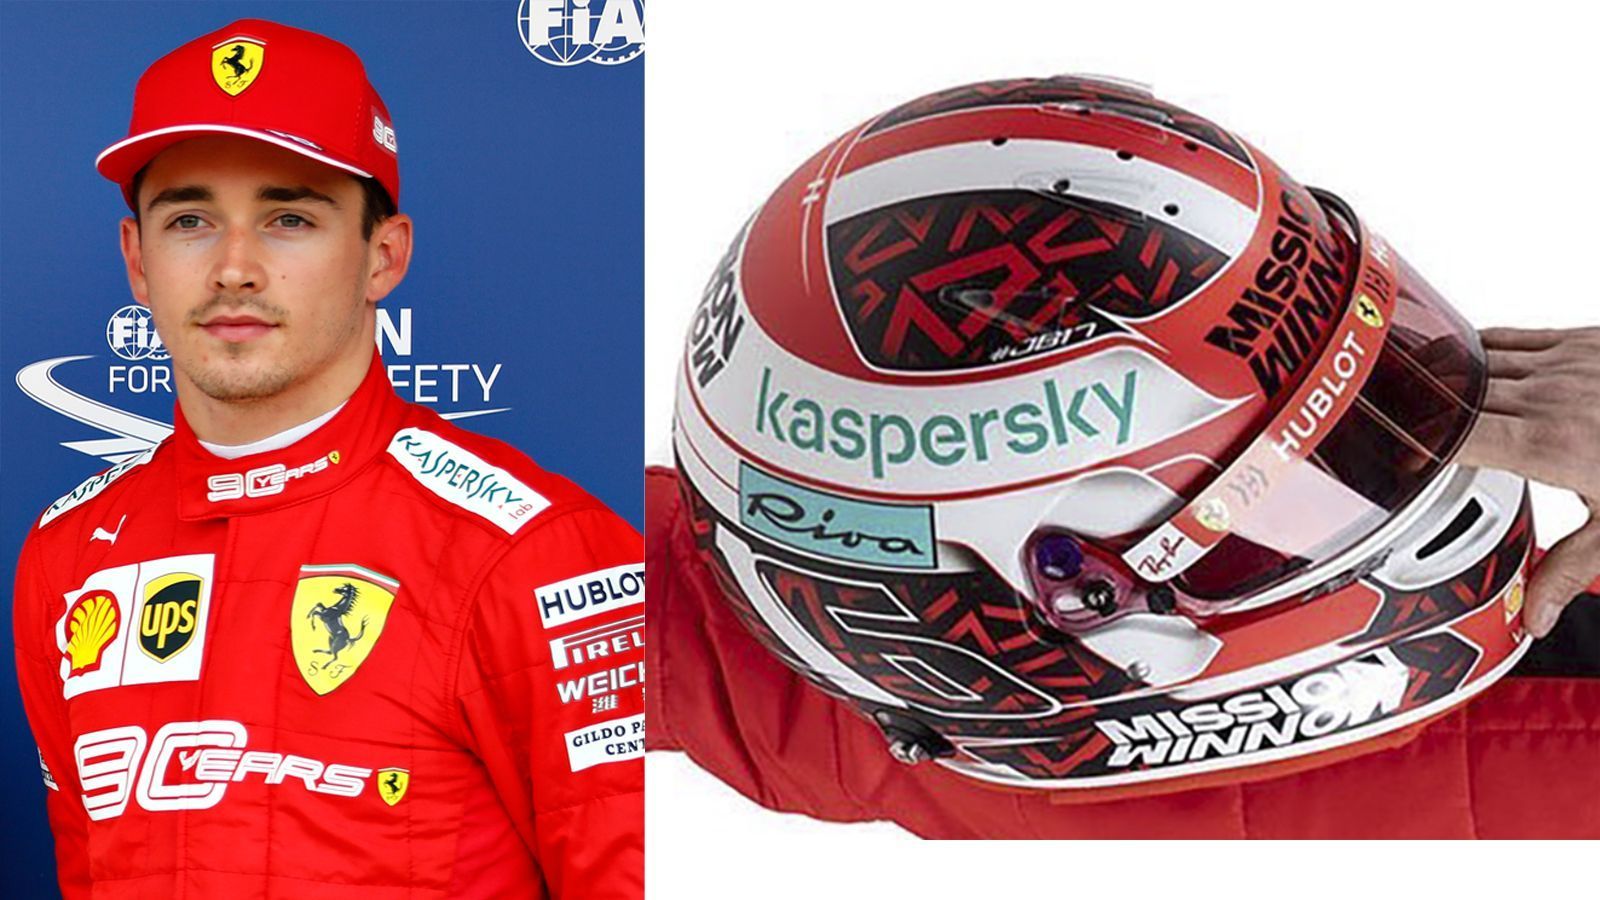 
                <strong>Charles Leclerc (Scuderia Ferrari)</strong><br>
                Die Farbe Rot macht nicht nur den Ferrari aus, sie ziert auch zu 50 Prozent die Flagge von Monte Carlo, der Heimat von Charles Leclerc. Daher nicht verwunderlich, dass diese Farbe auch auf seinem Helm prominent stattfindet.
              